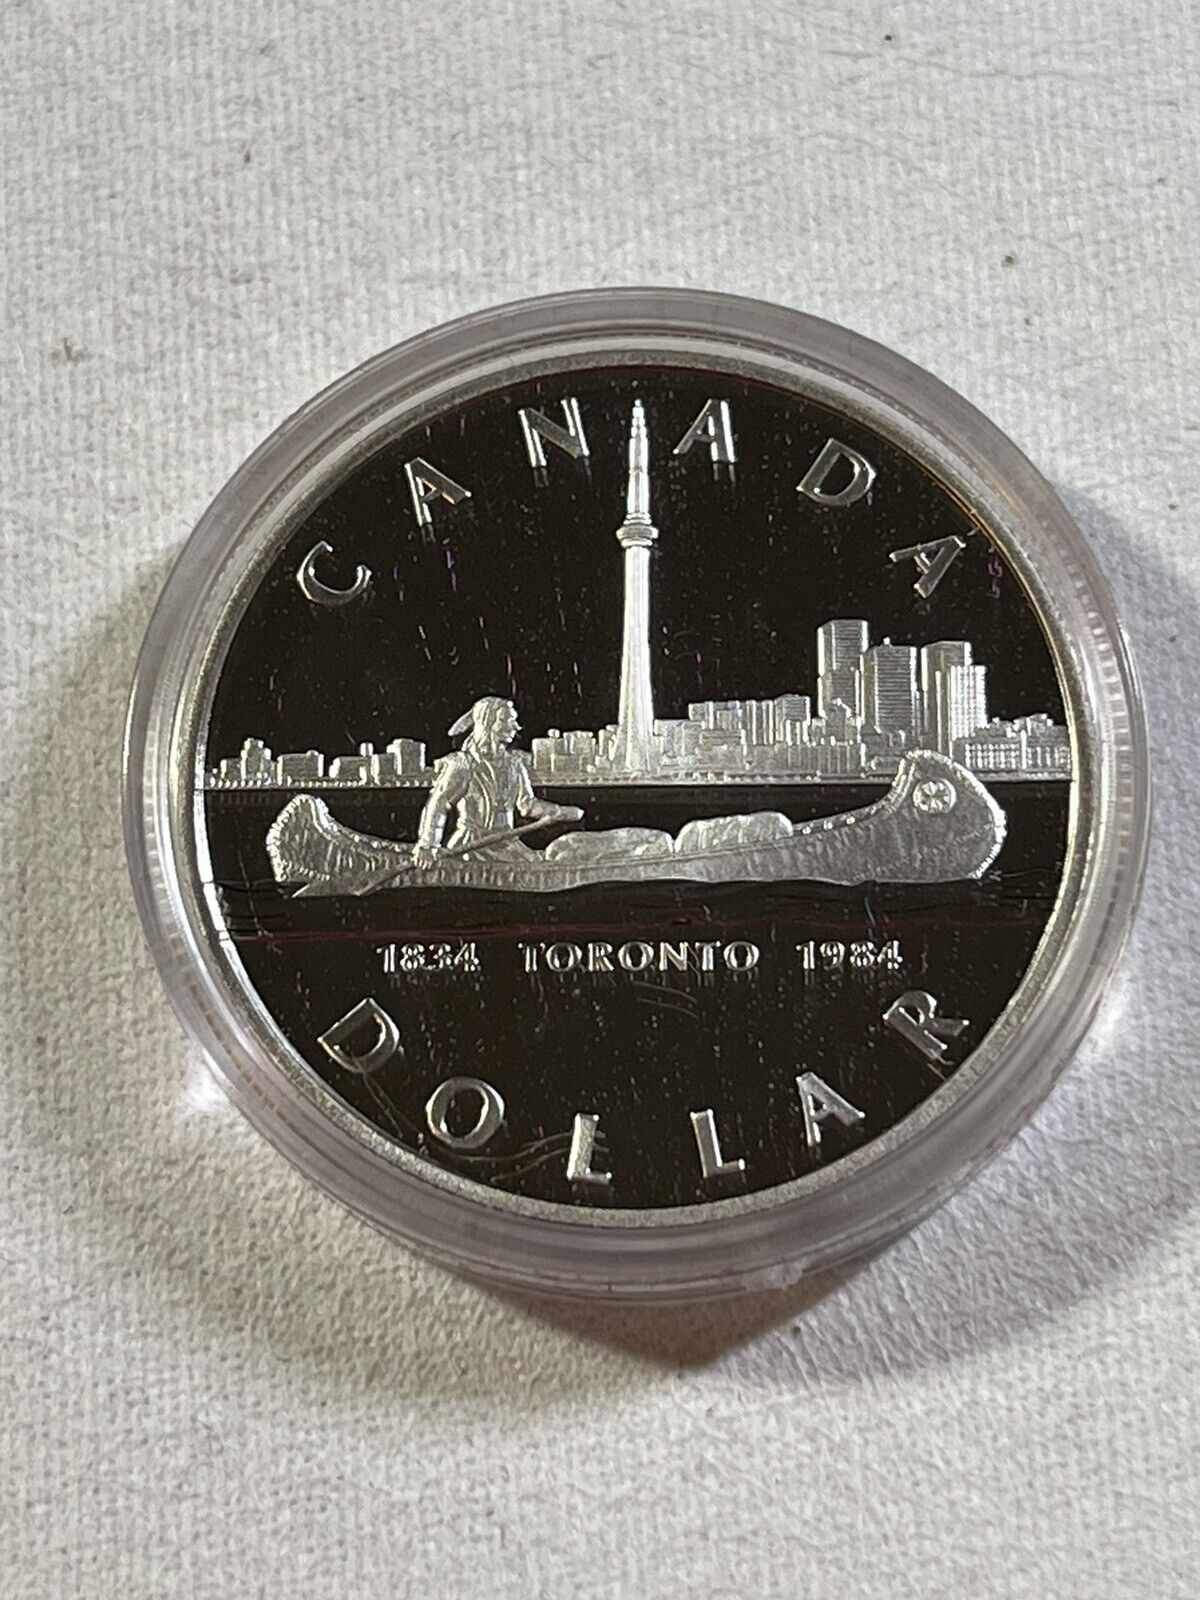 1984 Canada 1 Dollar Silver Proof Coin Toronto